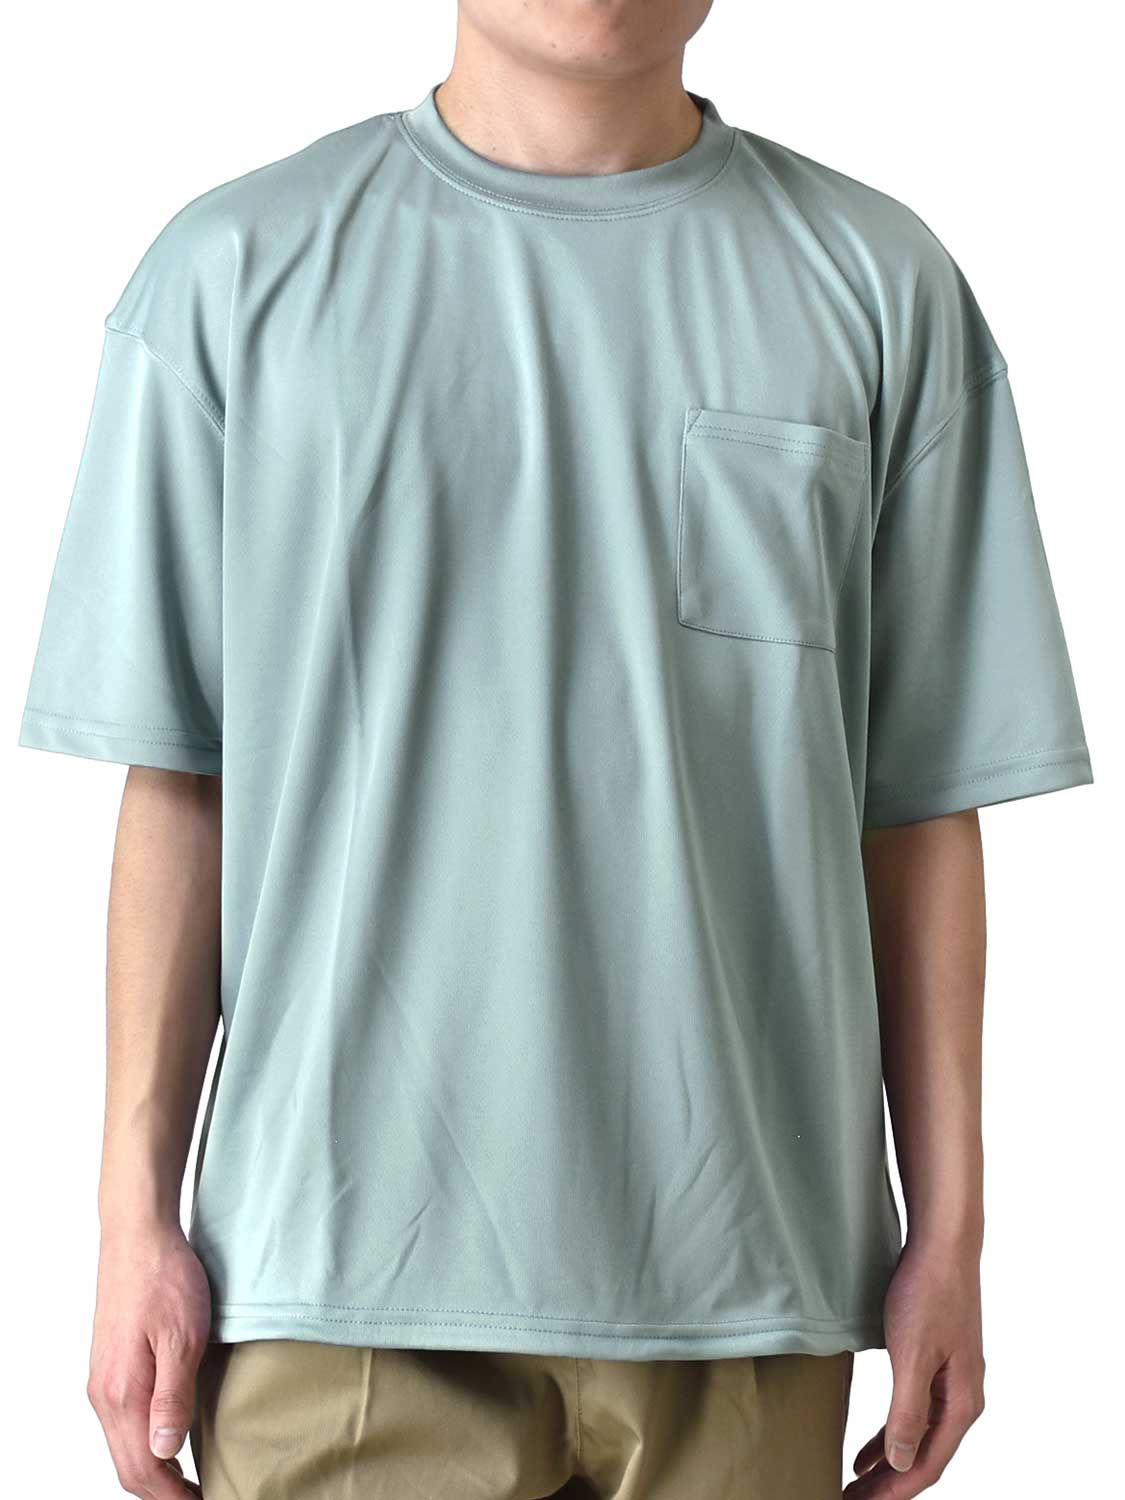 DRYストレッチ Tシャツ 半袖 メンズ 吸汗速乾 くすみカラー ワイドシルエット ポケット付き 送...